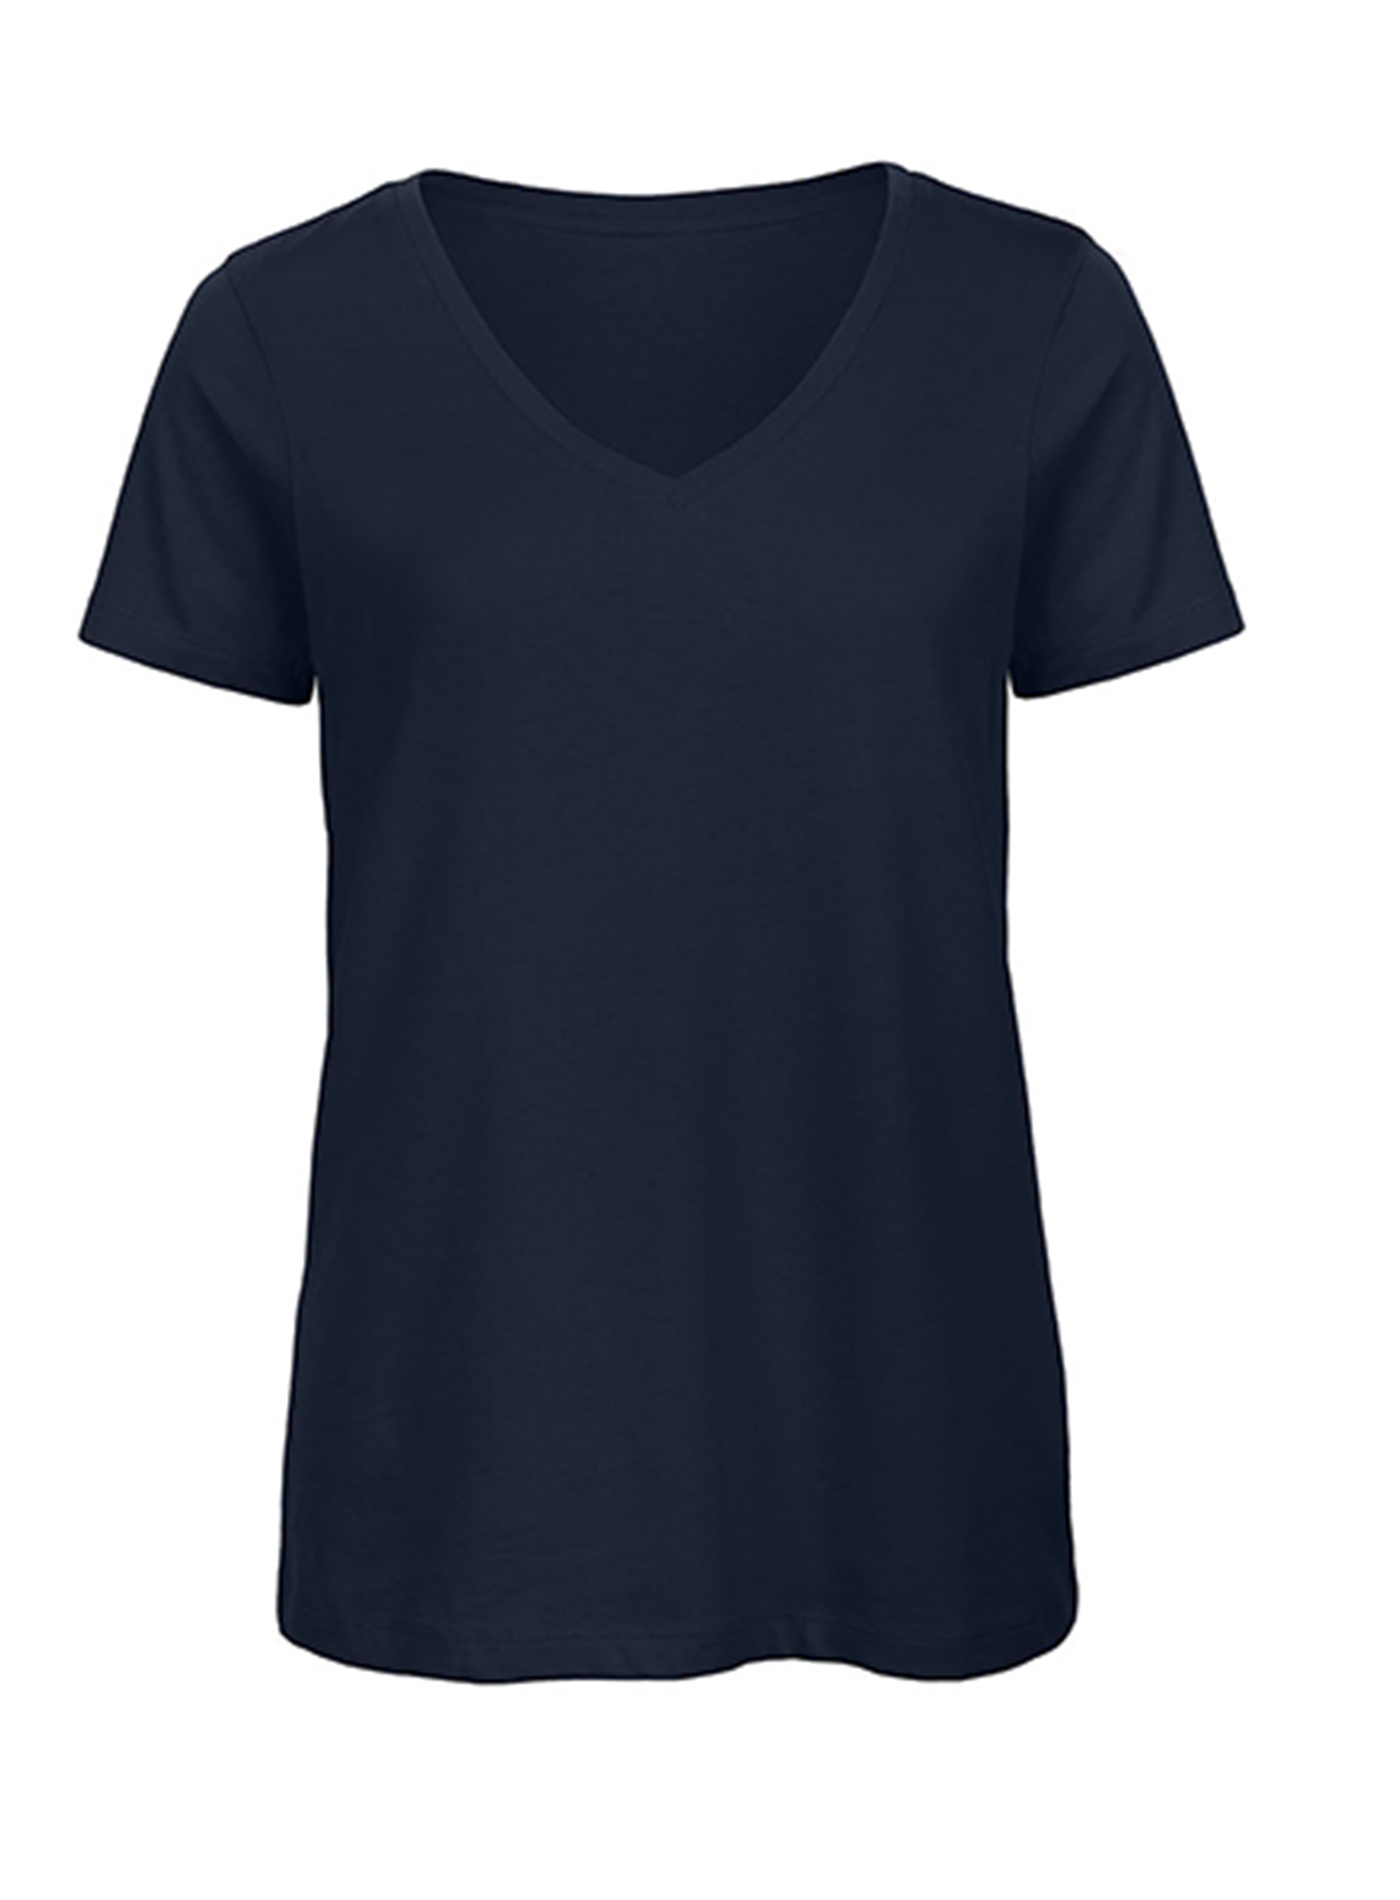 Dámské tričko s výstřihem do V B&C Collection Inspire - Námořnická modrá XL